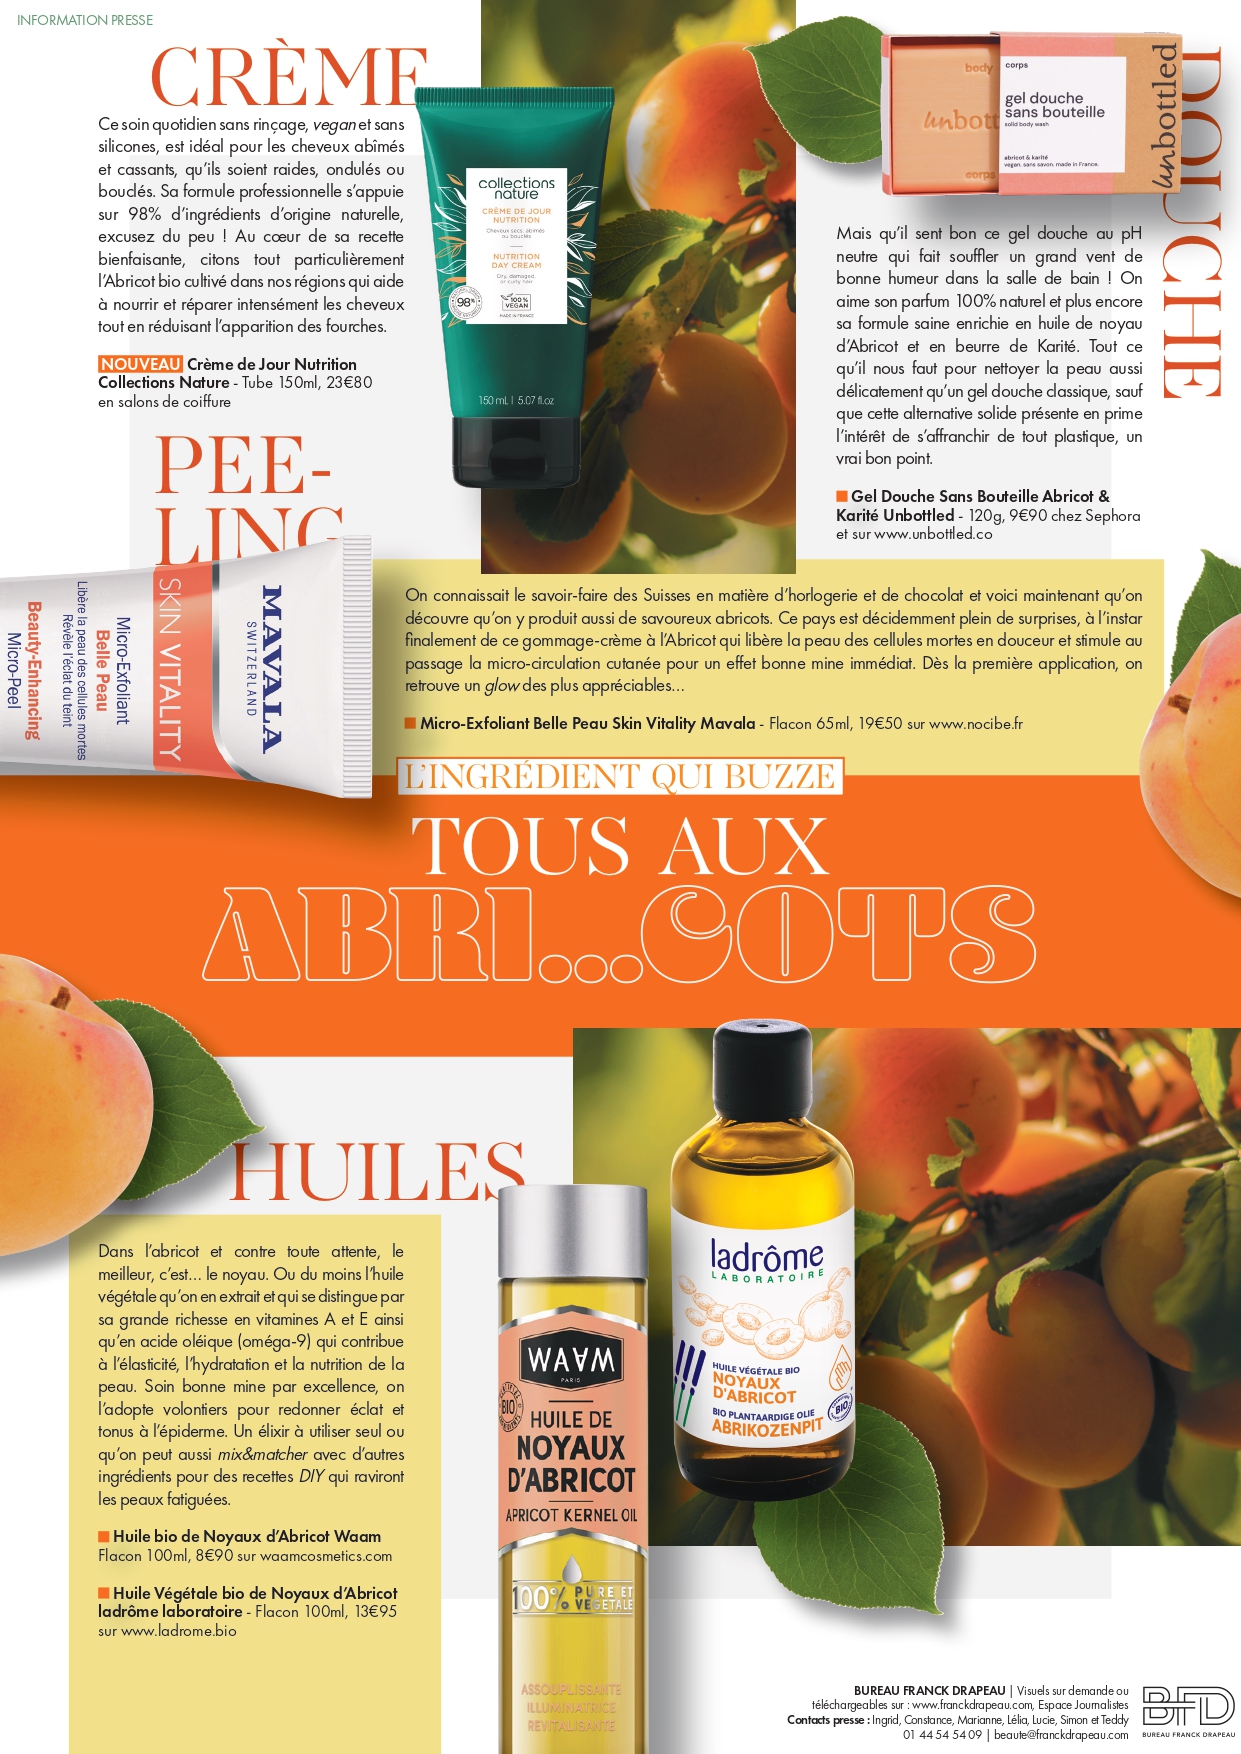 Newsletter | L’ingrédient qui buzze : l’Abricot